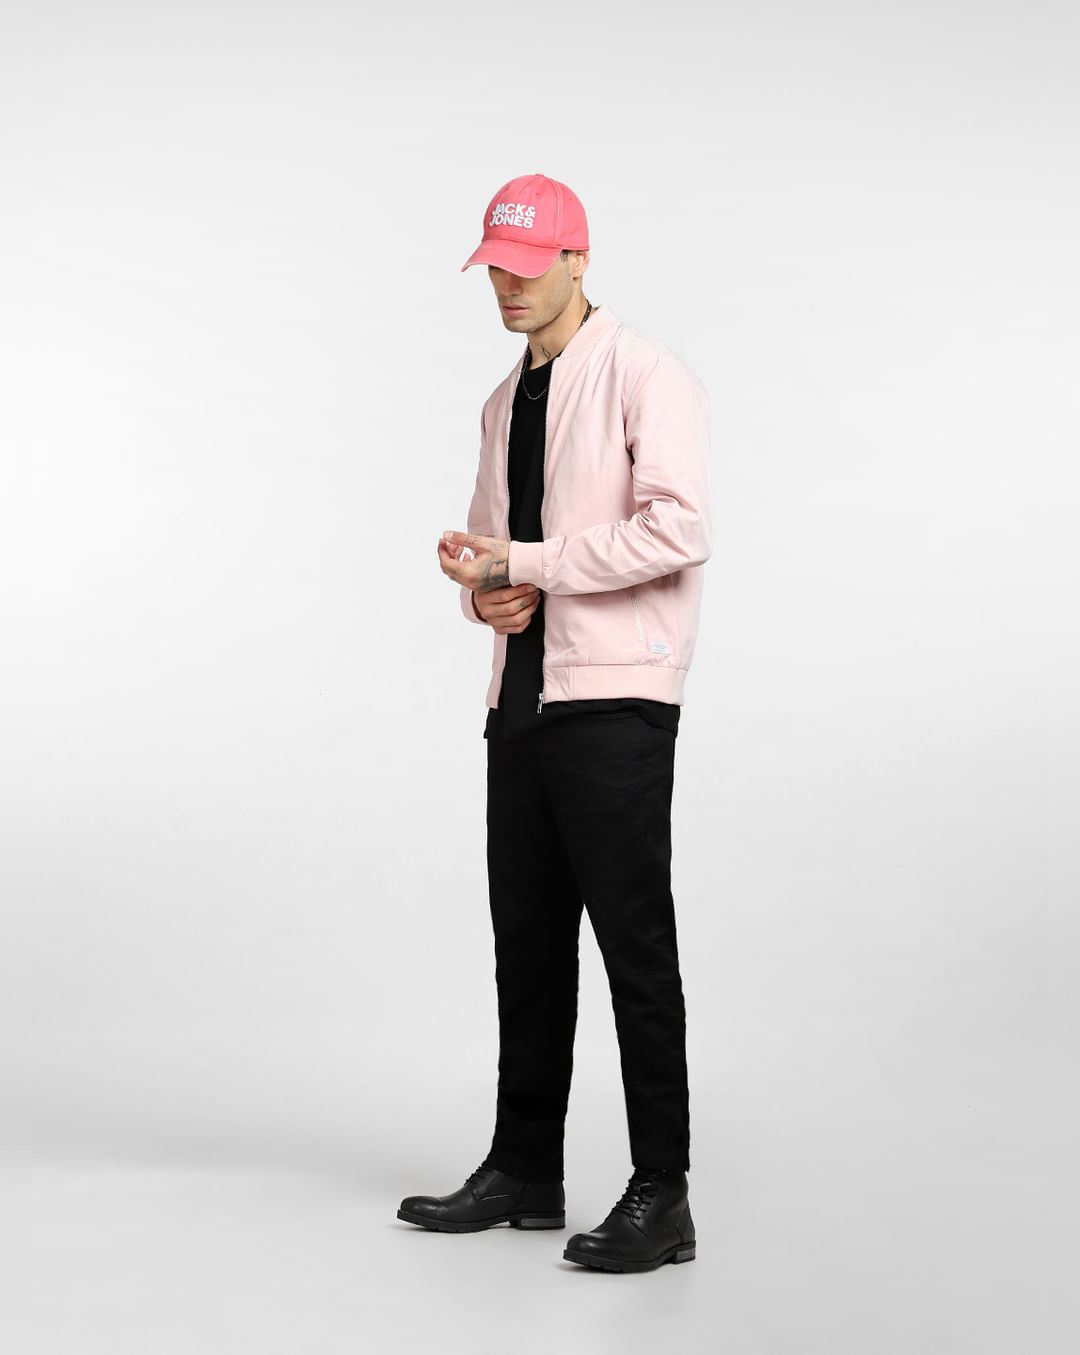 dutje Messing Weglaten Buy Light Pink Bomber Jacket for Men Online